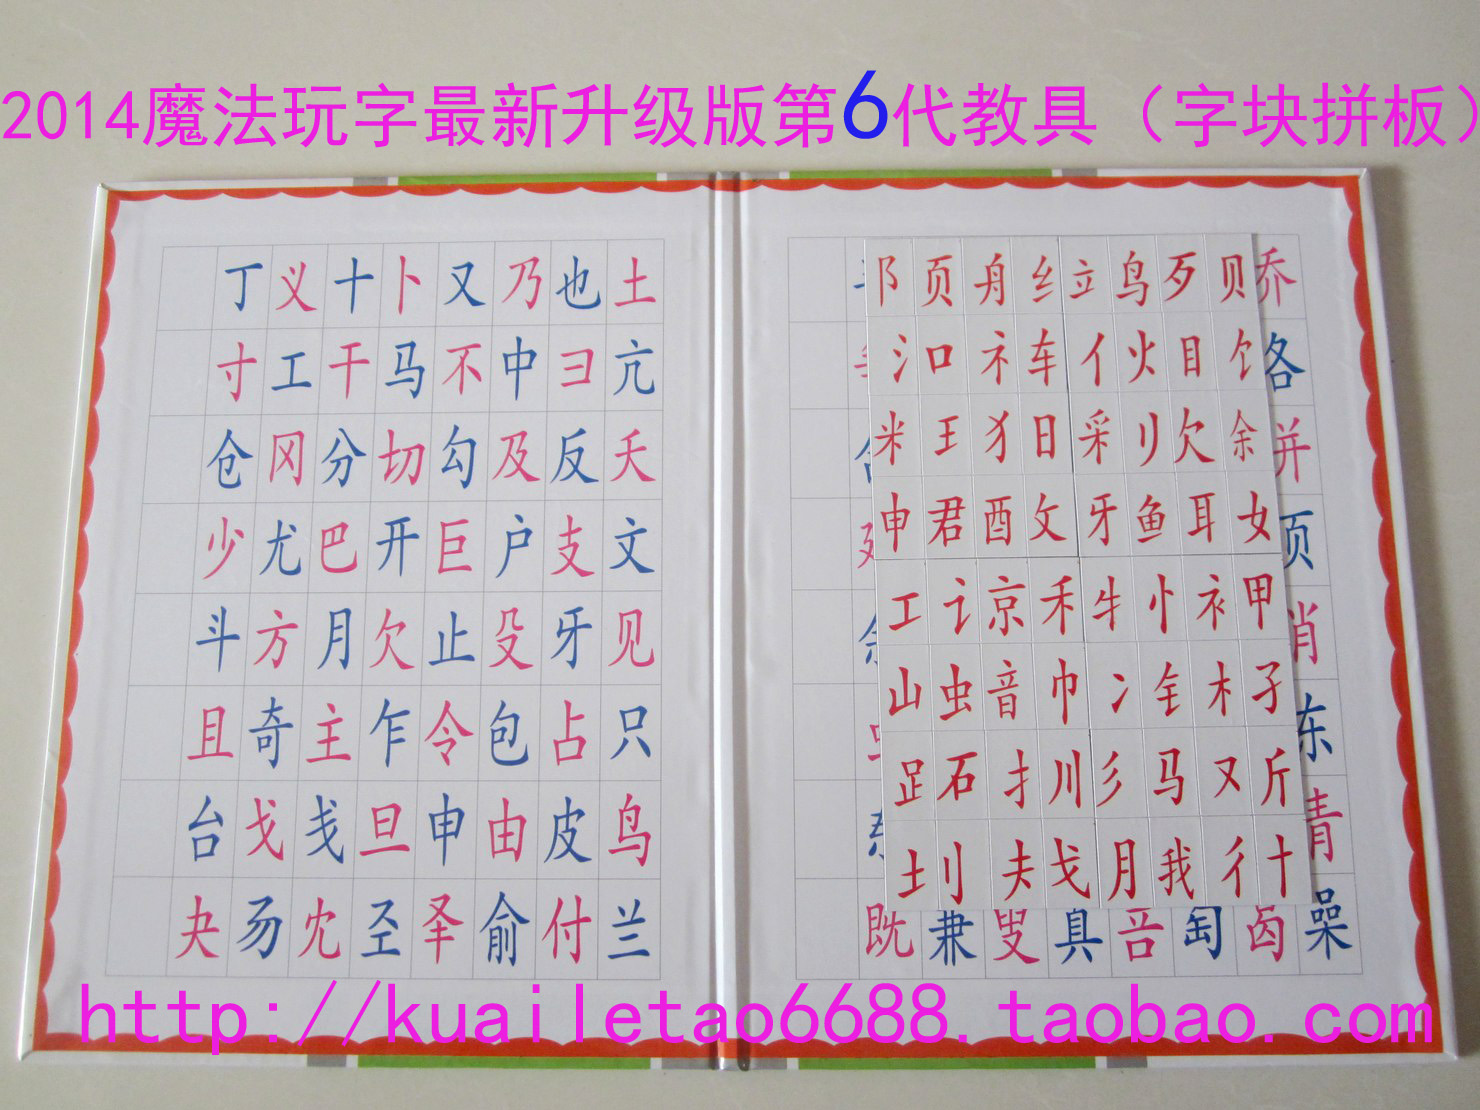 陈淑红魔法玩字2015最新经济装升级第6代教具字块拼板